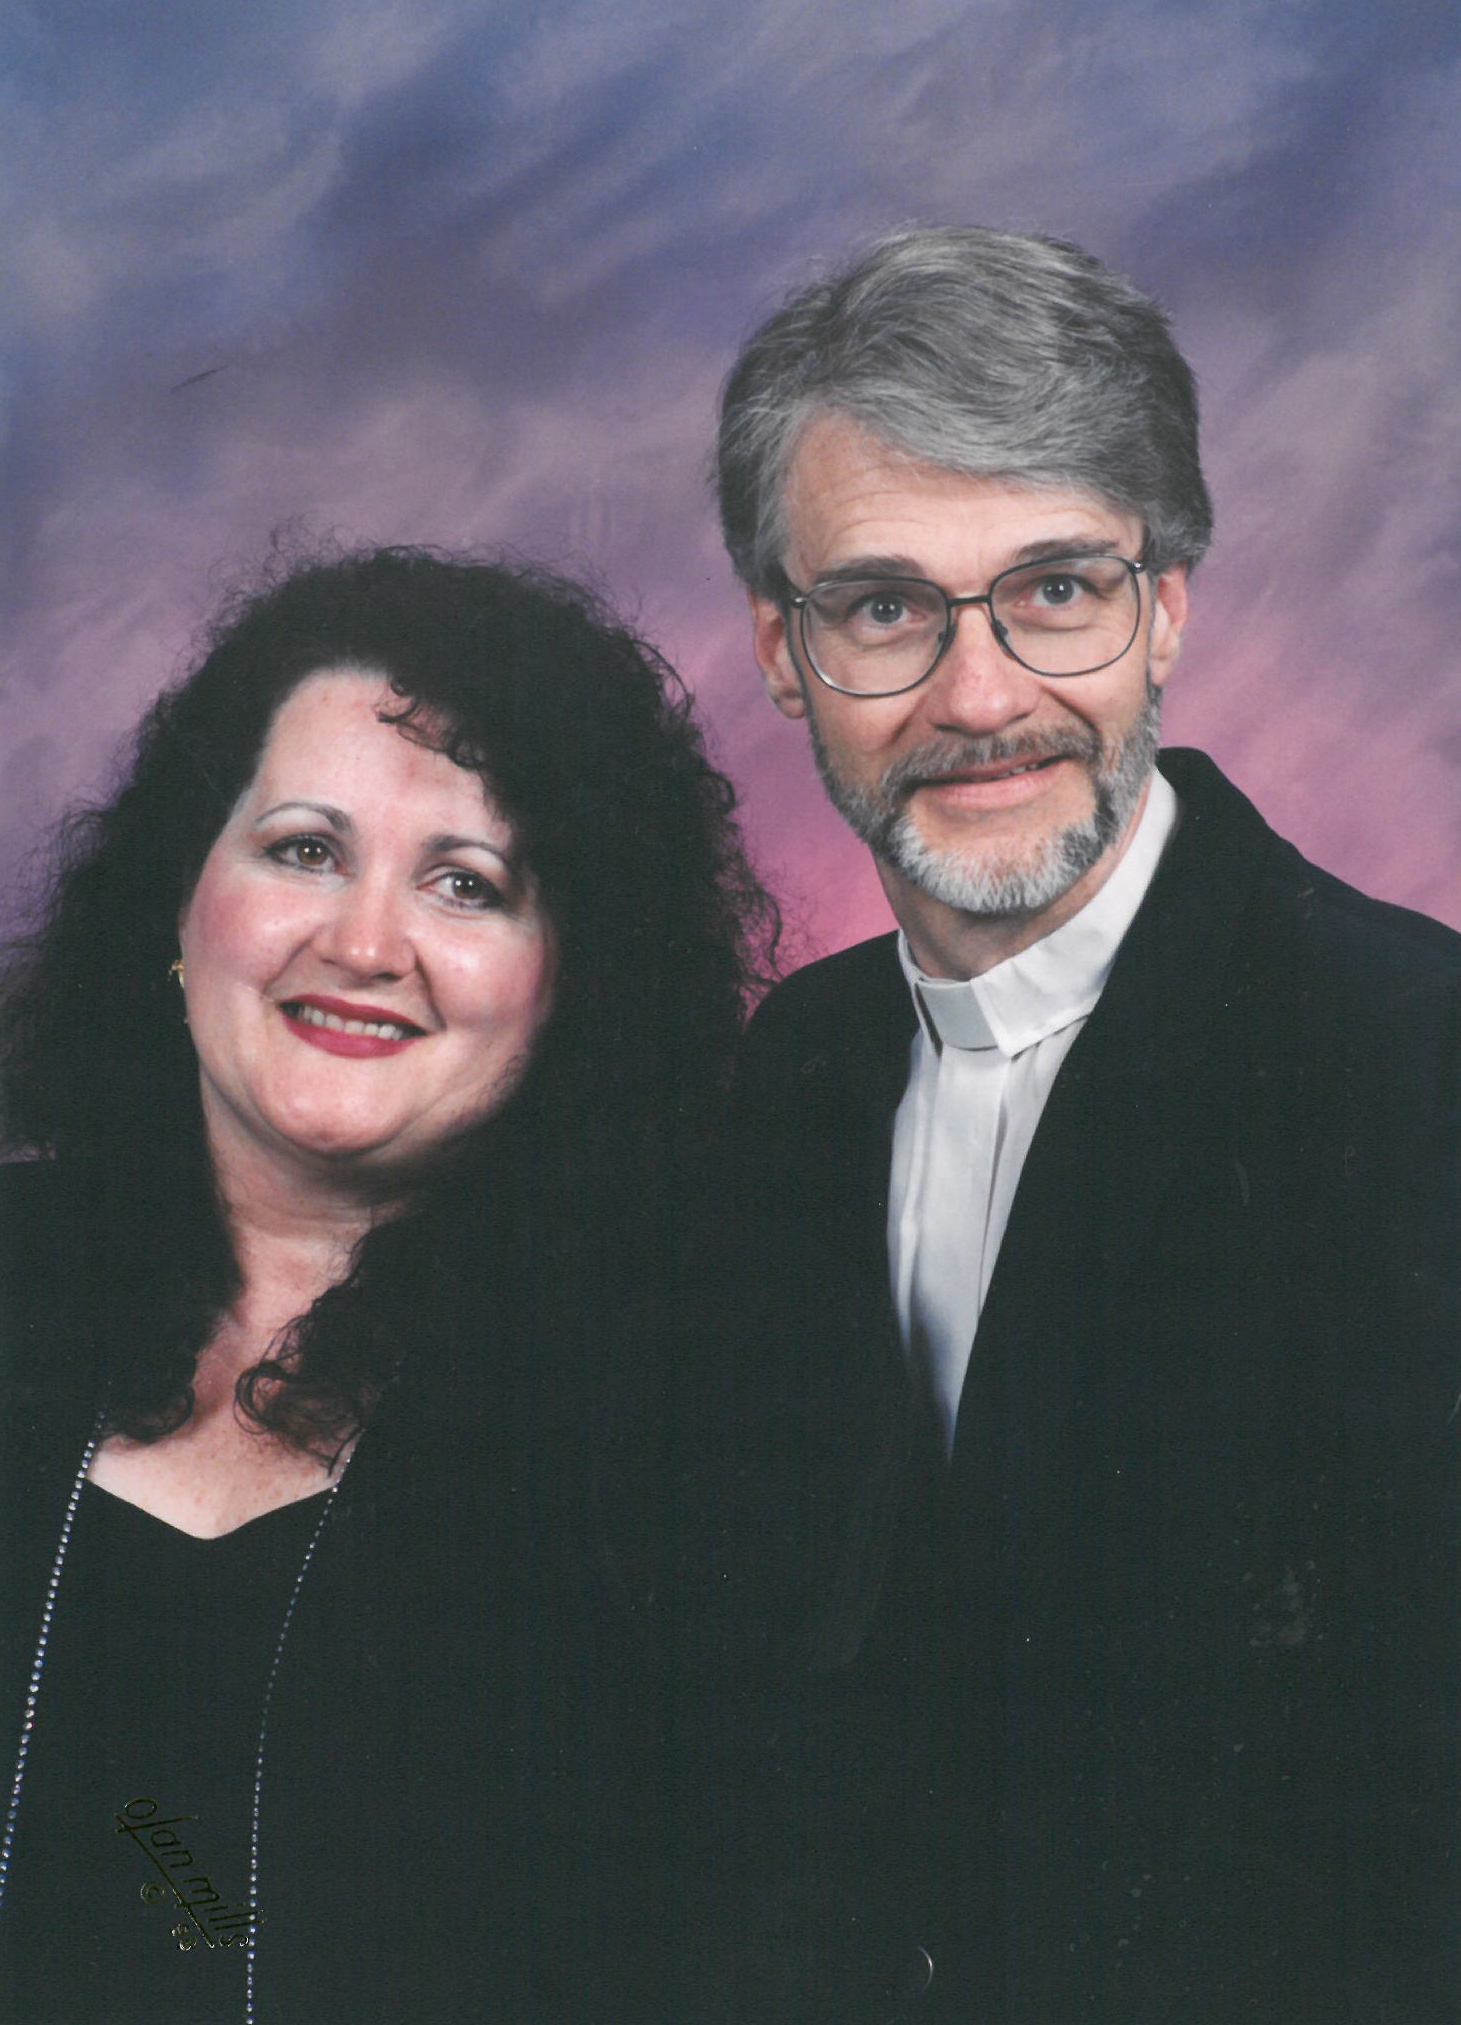 John Ericksen and his wife